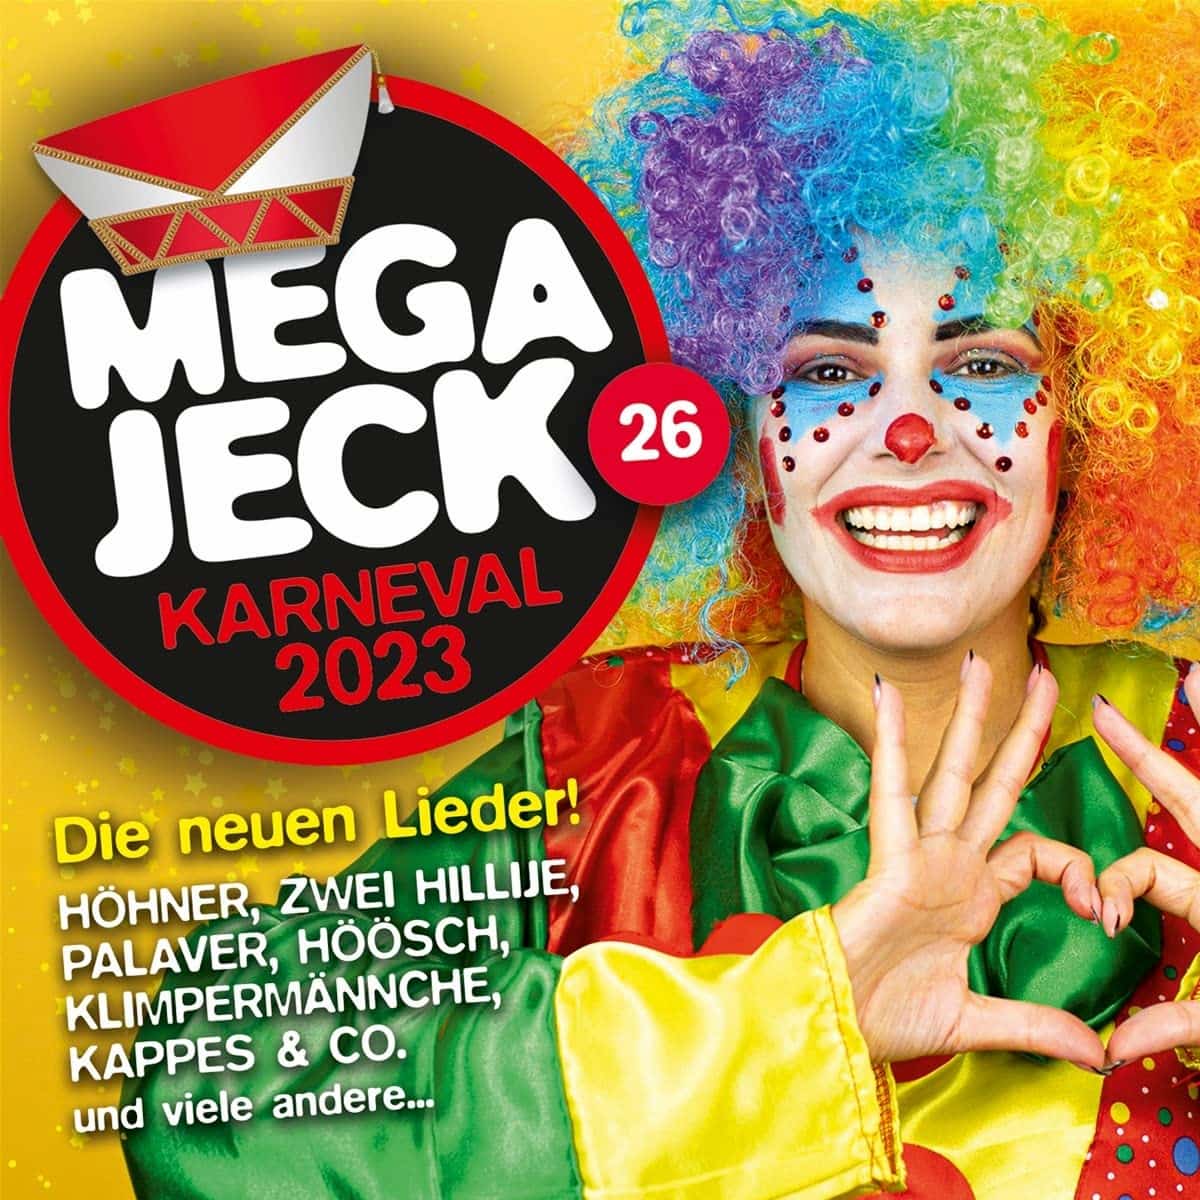 Karnevals-CD “Megajeck 26” für den Karneval 2022-2023